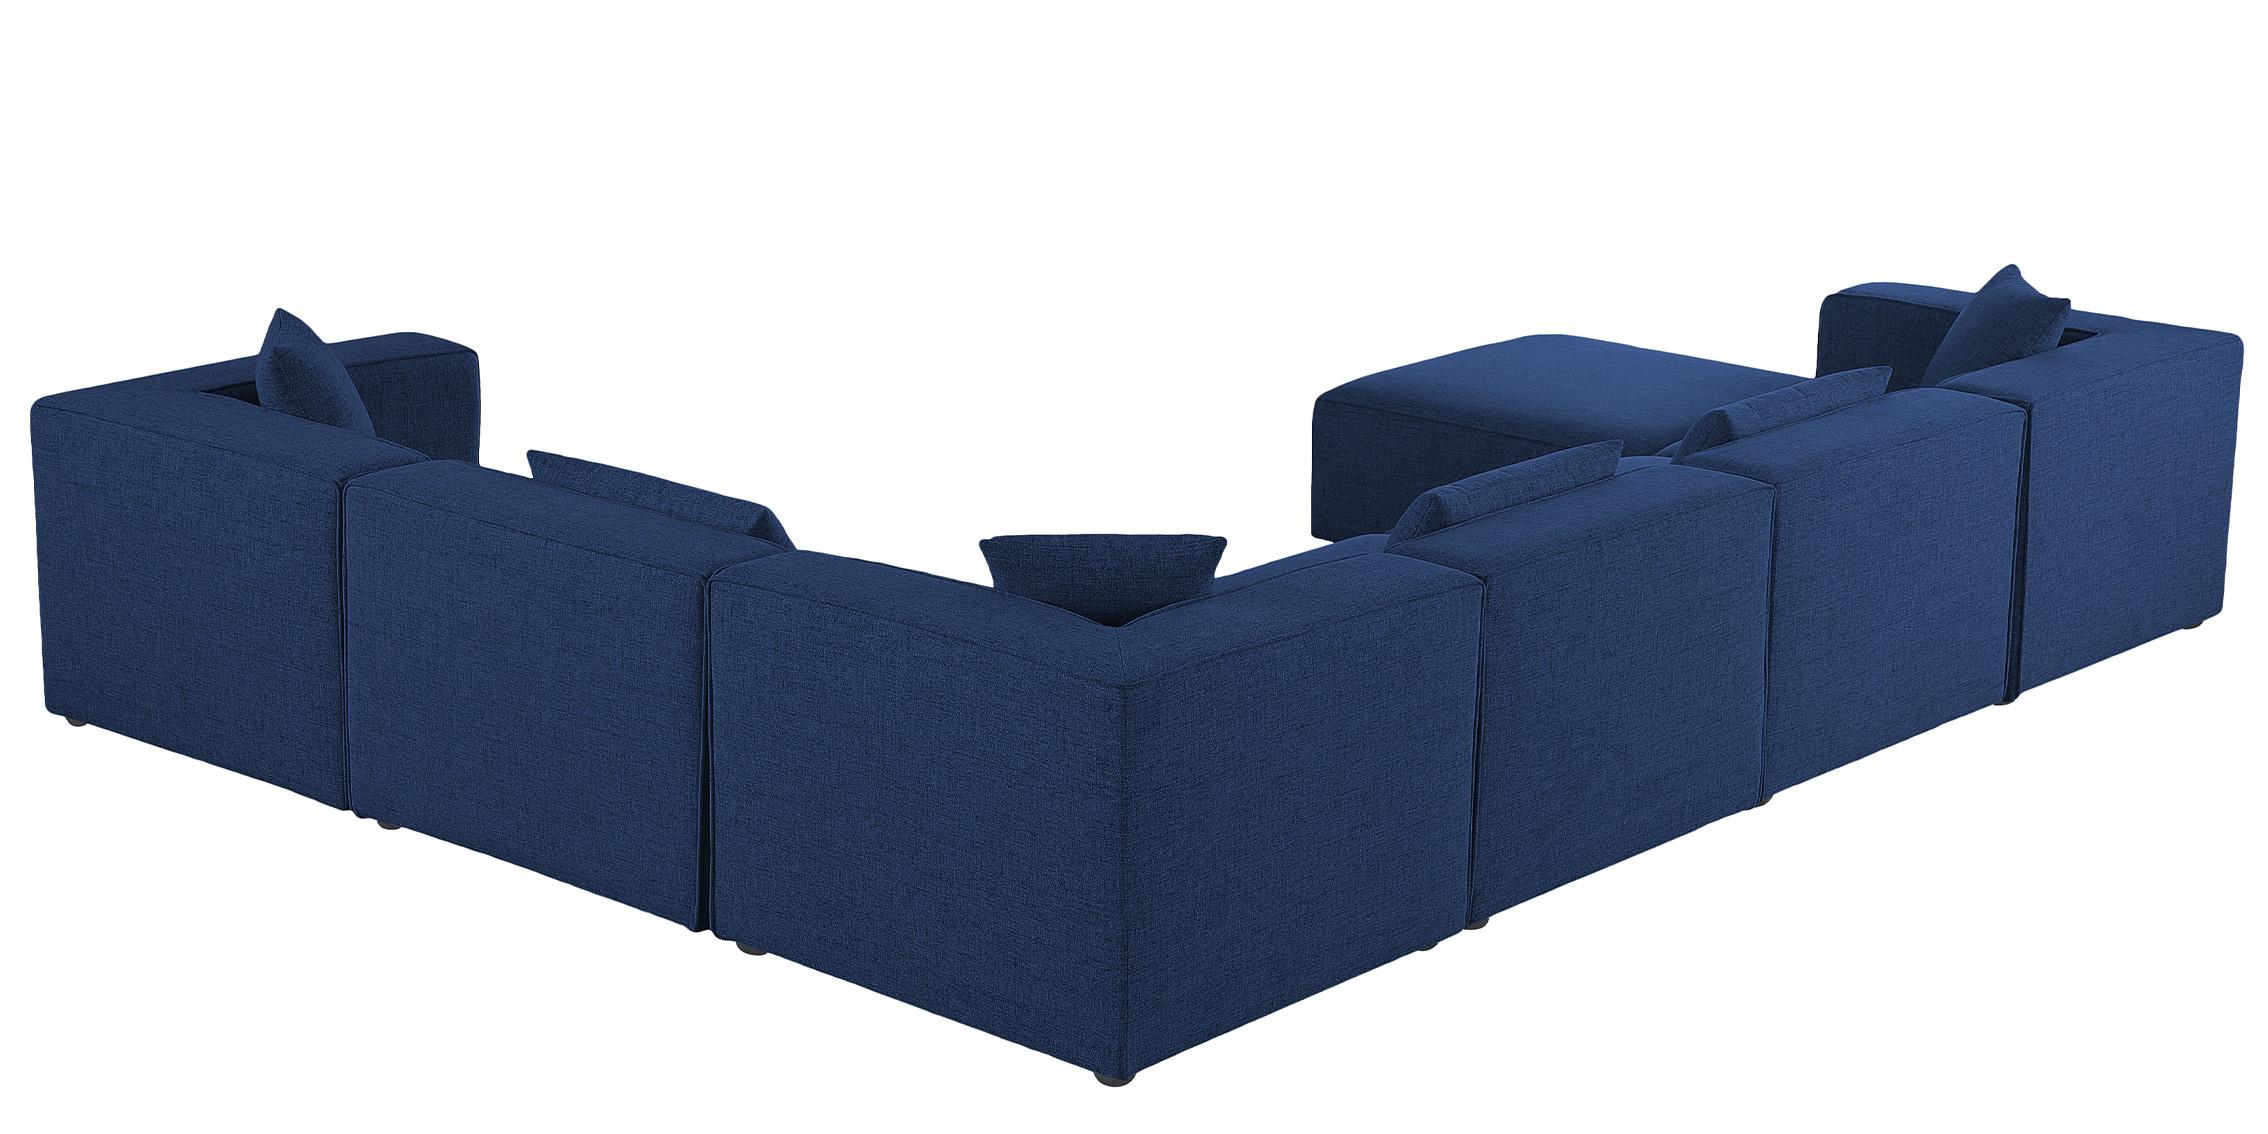 

    
630Navy-Sec7A Meridian Furniture Modular Sectional Sofa
